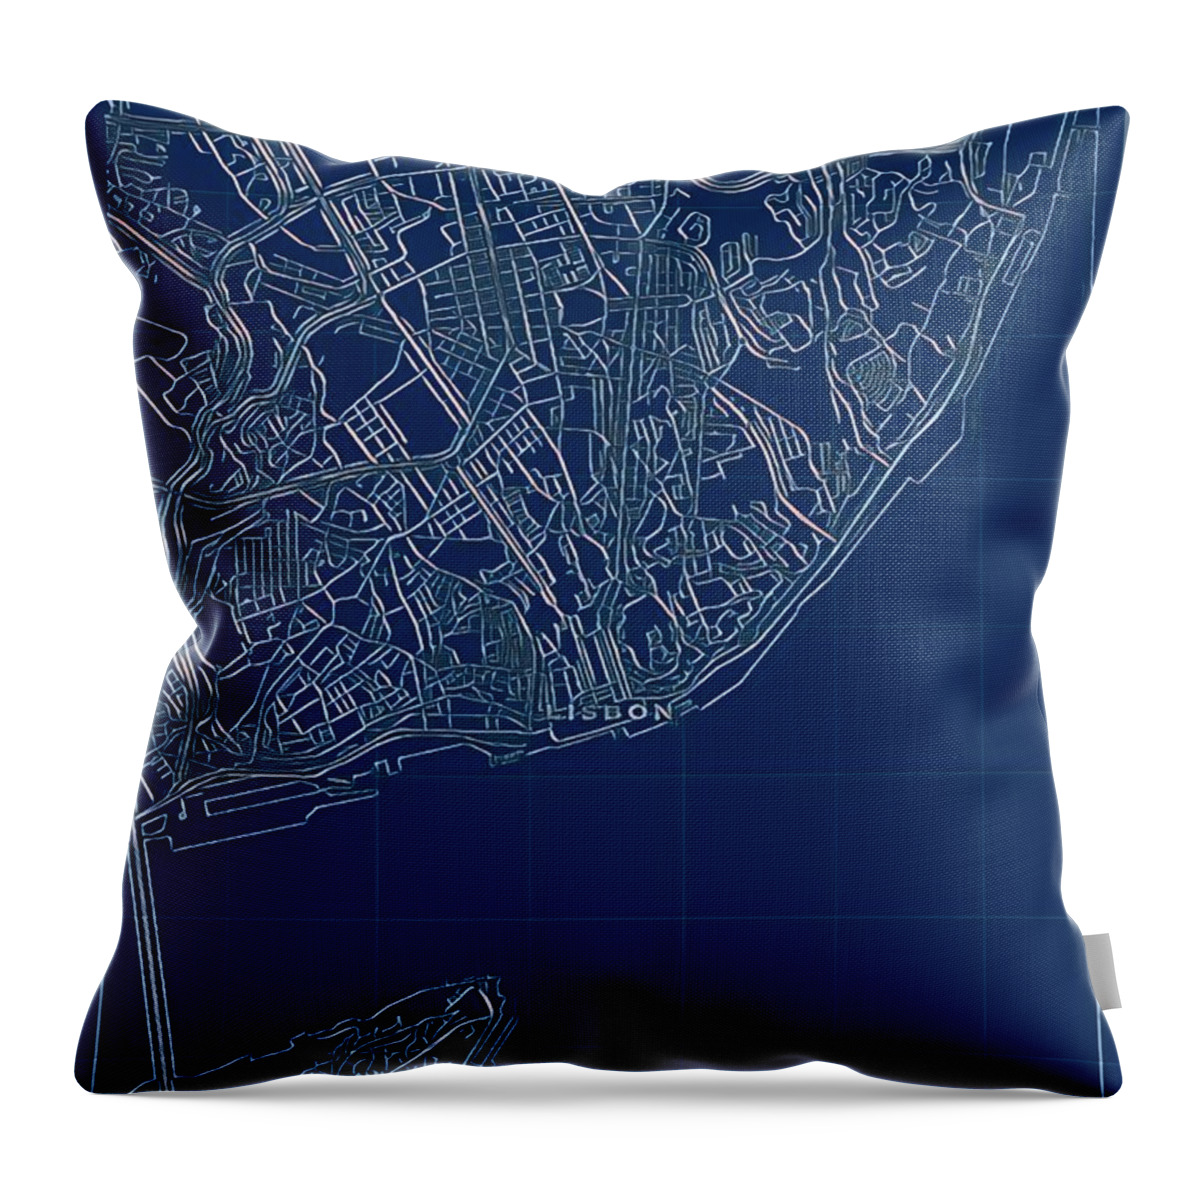 Lisbon Throw Pillow featuring the digital art Lisbon Blueprint City Map by HELGE Art Gallery